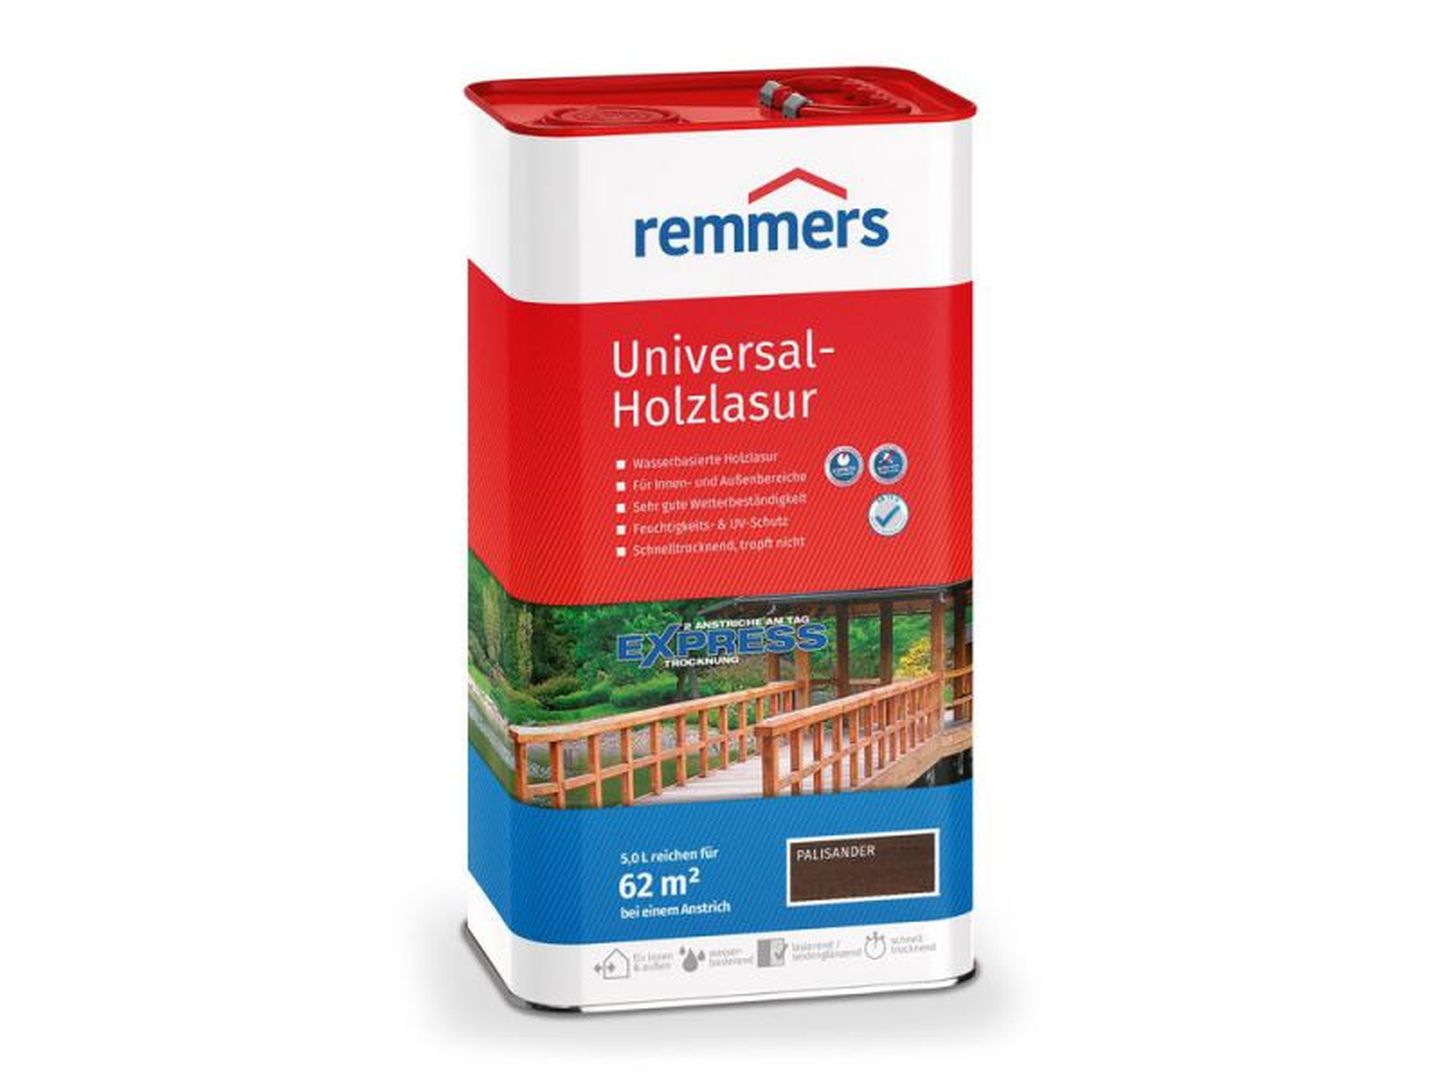 Remmers Universal-Holzlasur, palisander, 5 l